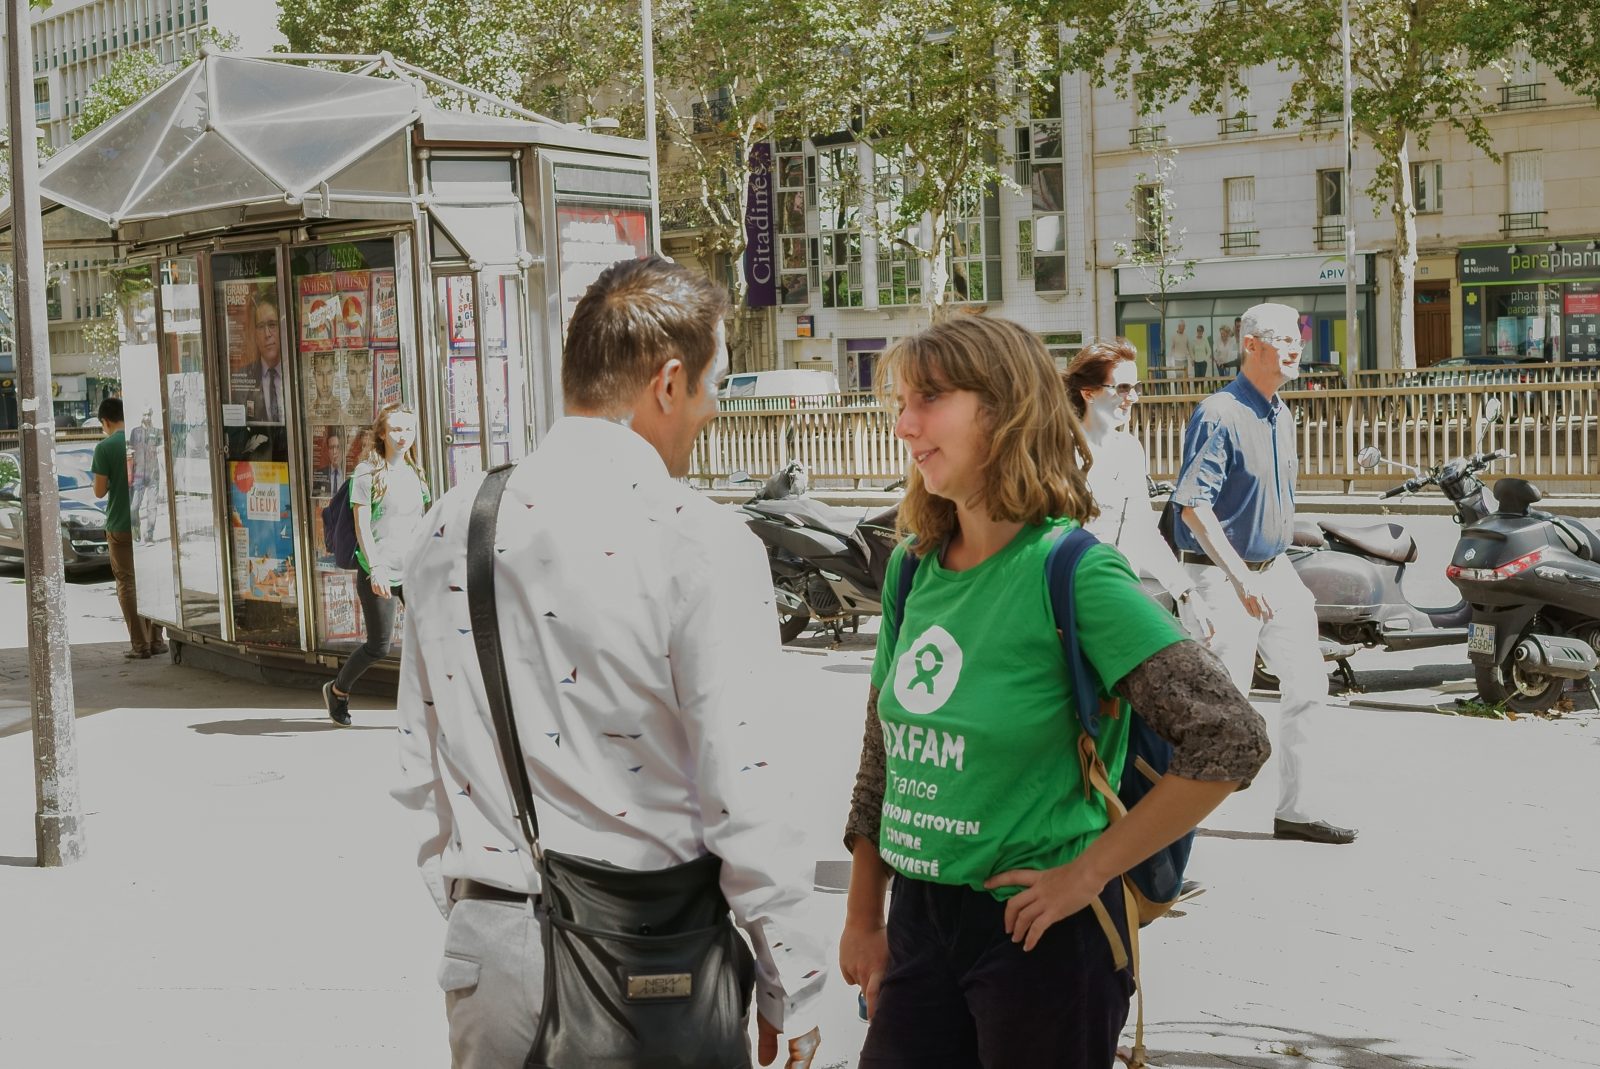 Equipes de collecte de rue d'Oxfam : toutes vos questions ! - Oxfam France